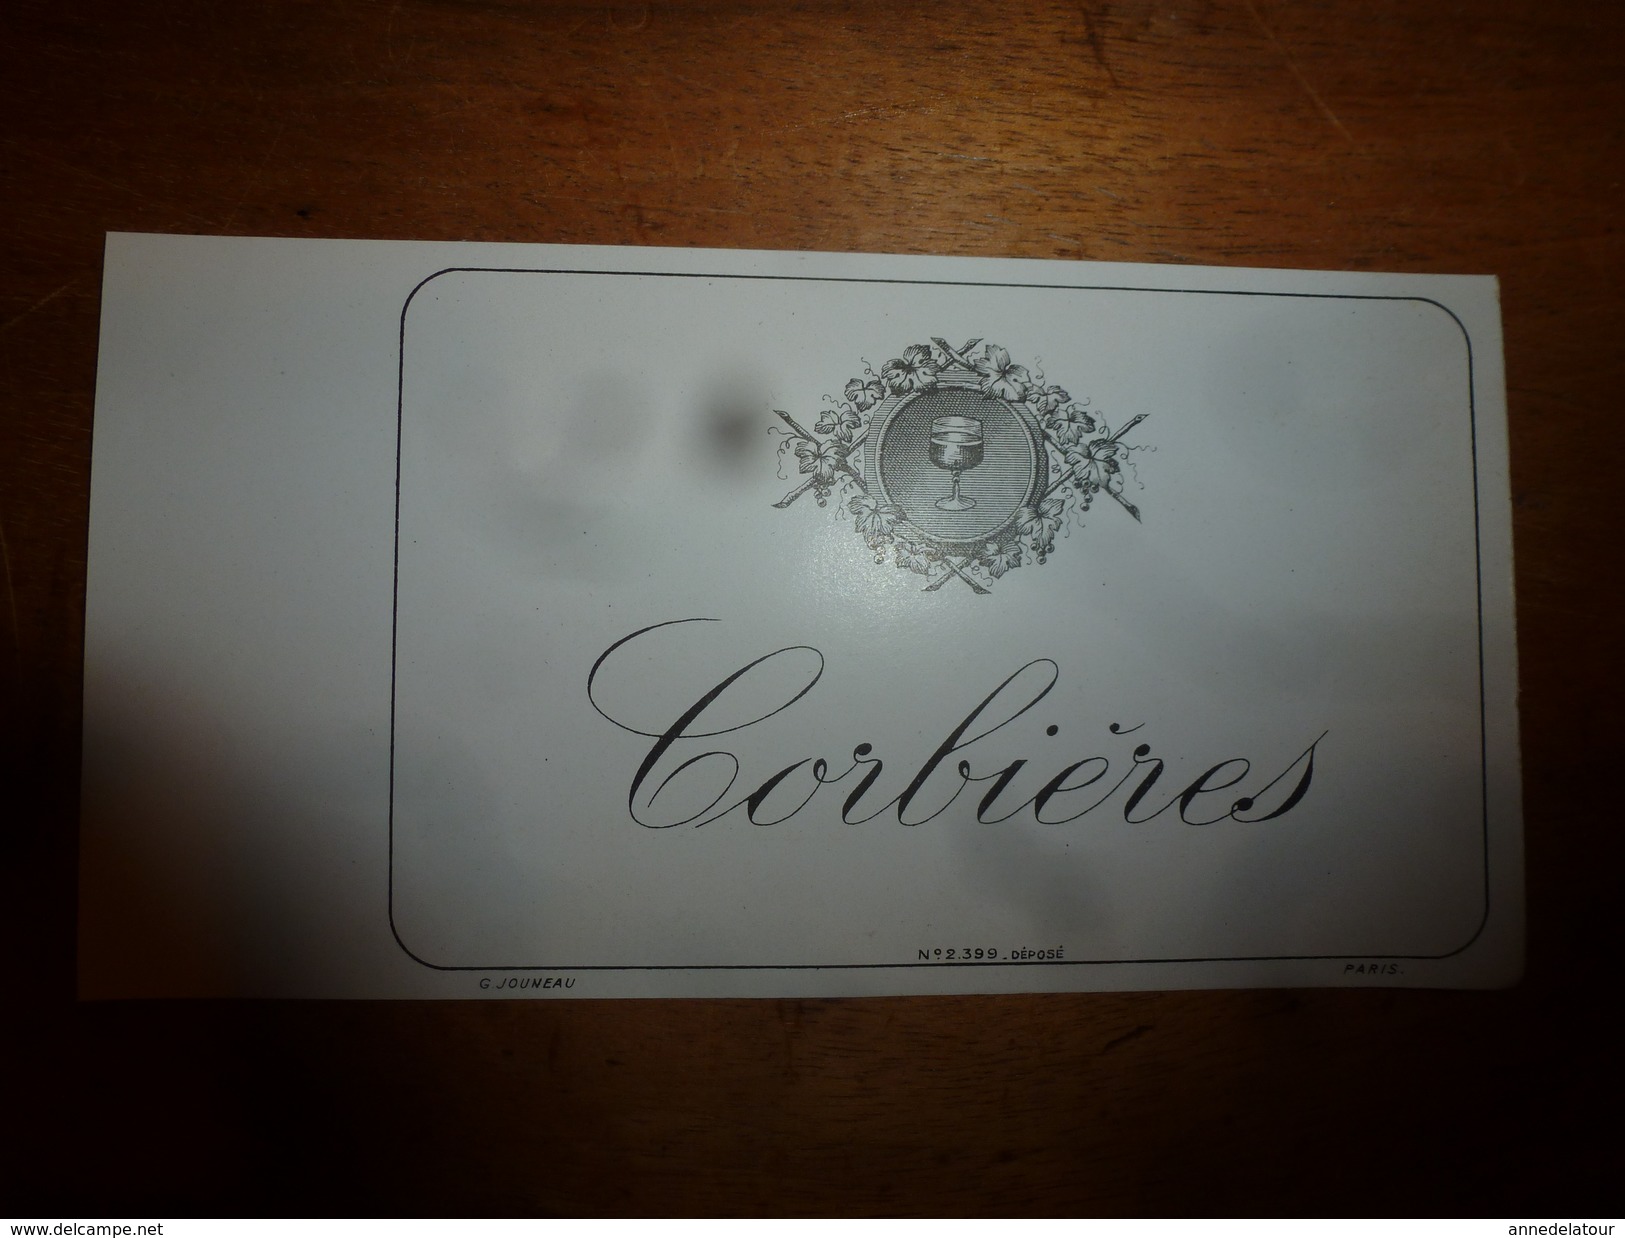 1920 ? Spécimen étiquette De Vin  CORBIERES ,   N° 2399, Déposé,  Imprimerie G.Jouneau  3 Rue Papin à Paris - Weisswein